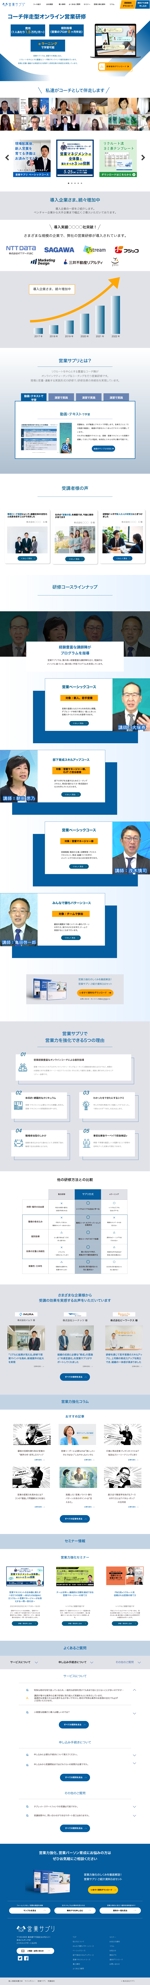 akira murayama (akira-murayama)さんのオンライン営業研修サイト TOPページデザイン作成への提案